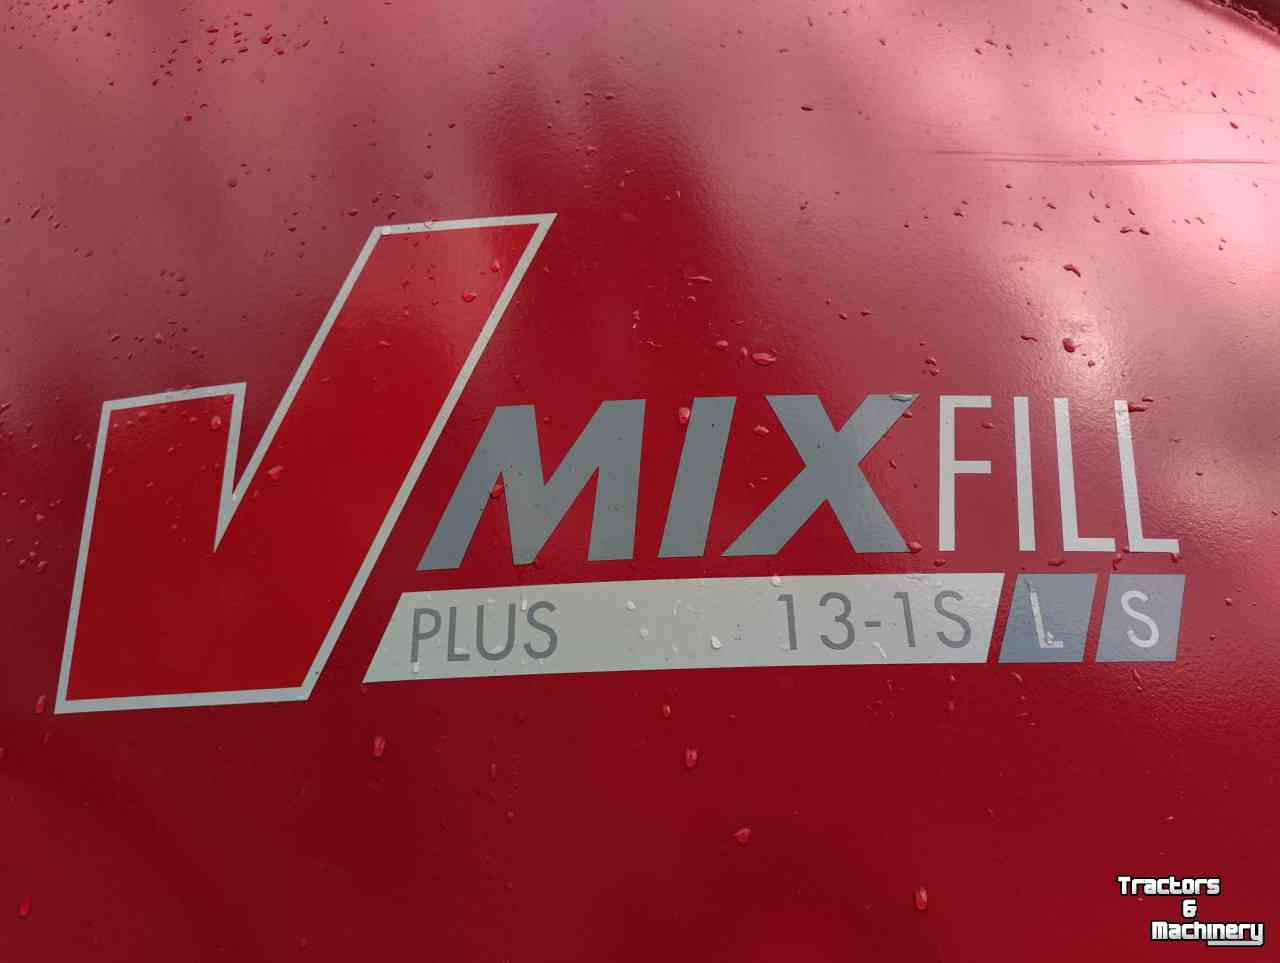 Vertical feed mixer BVL V-MIX 13 LS